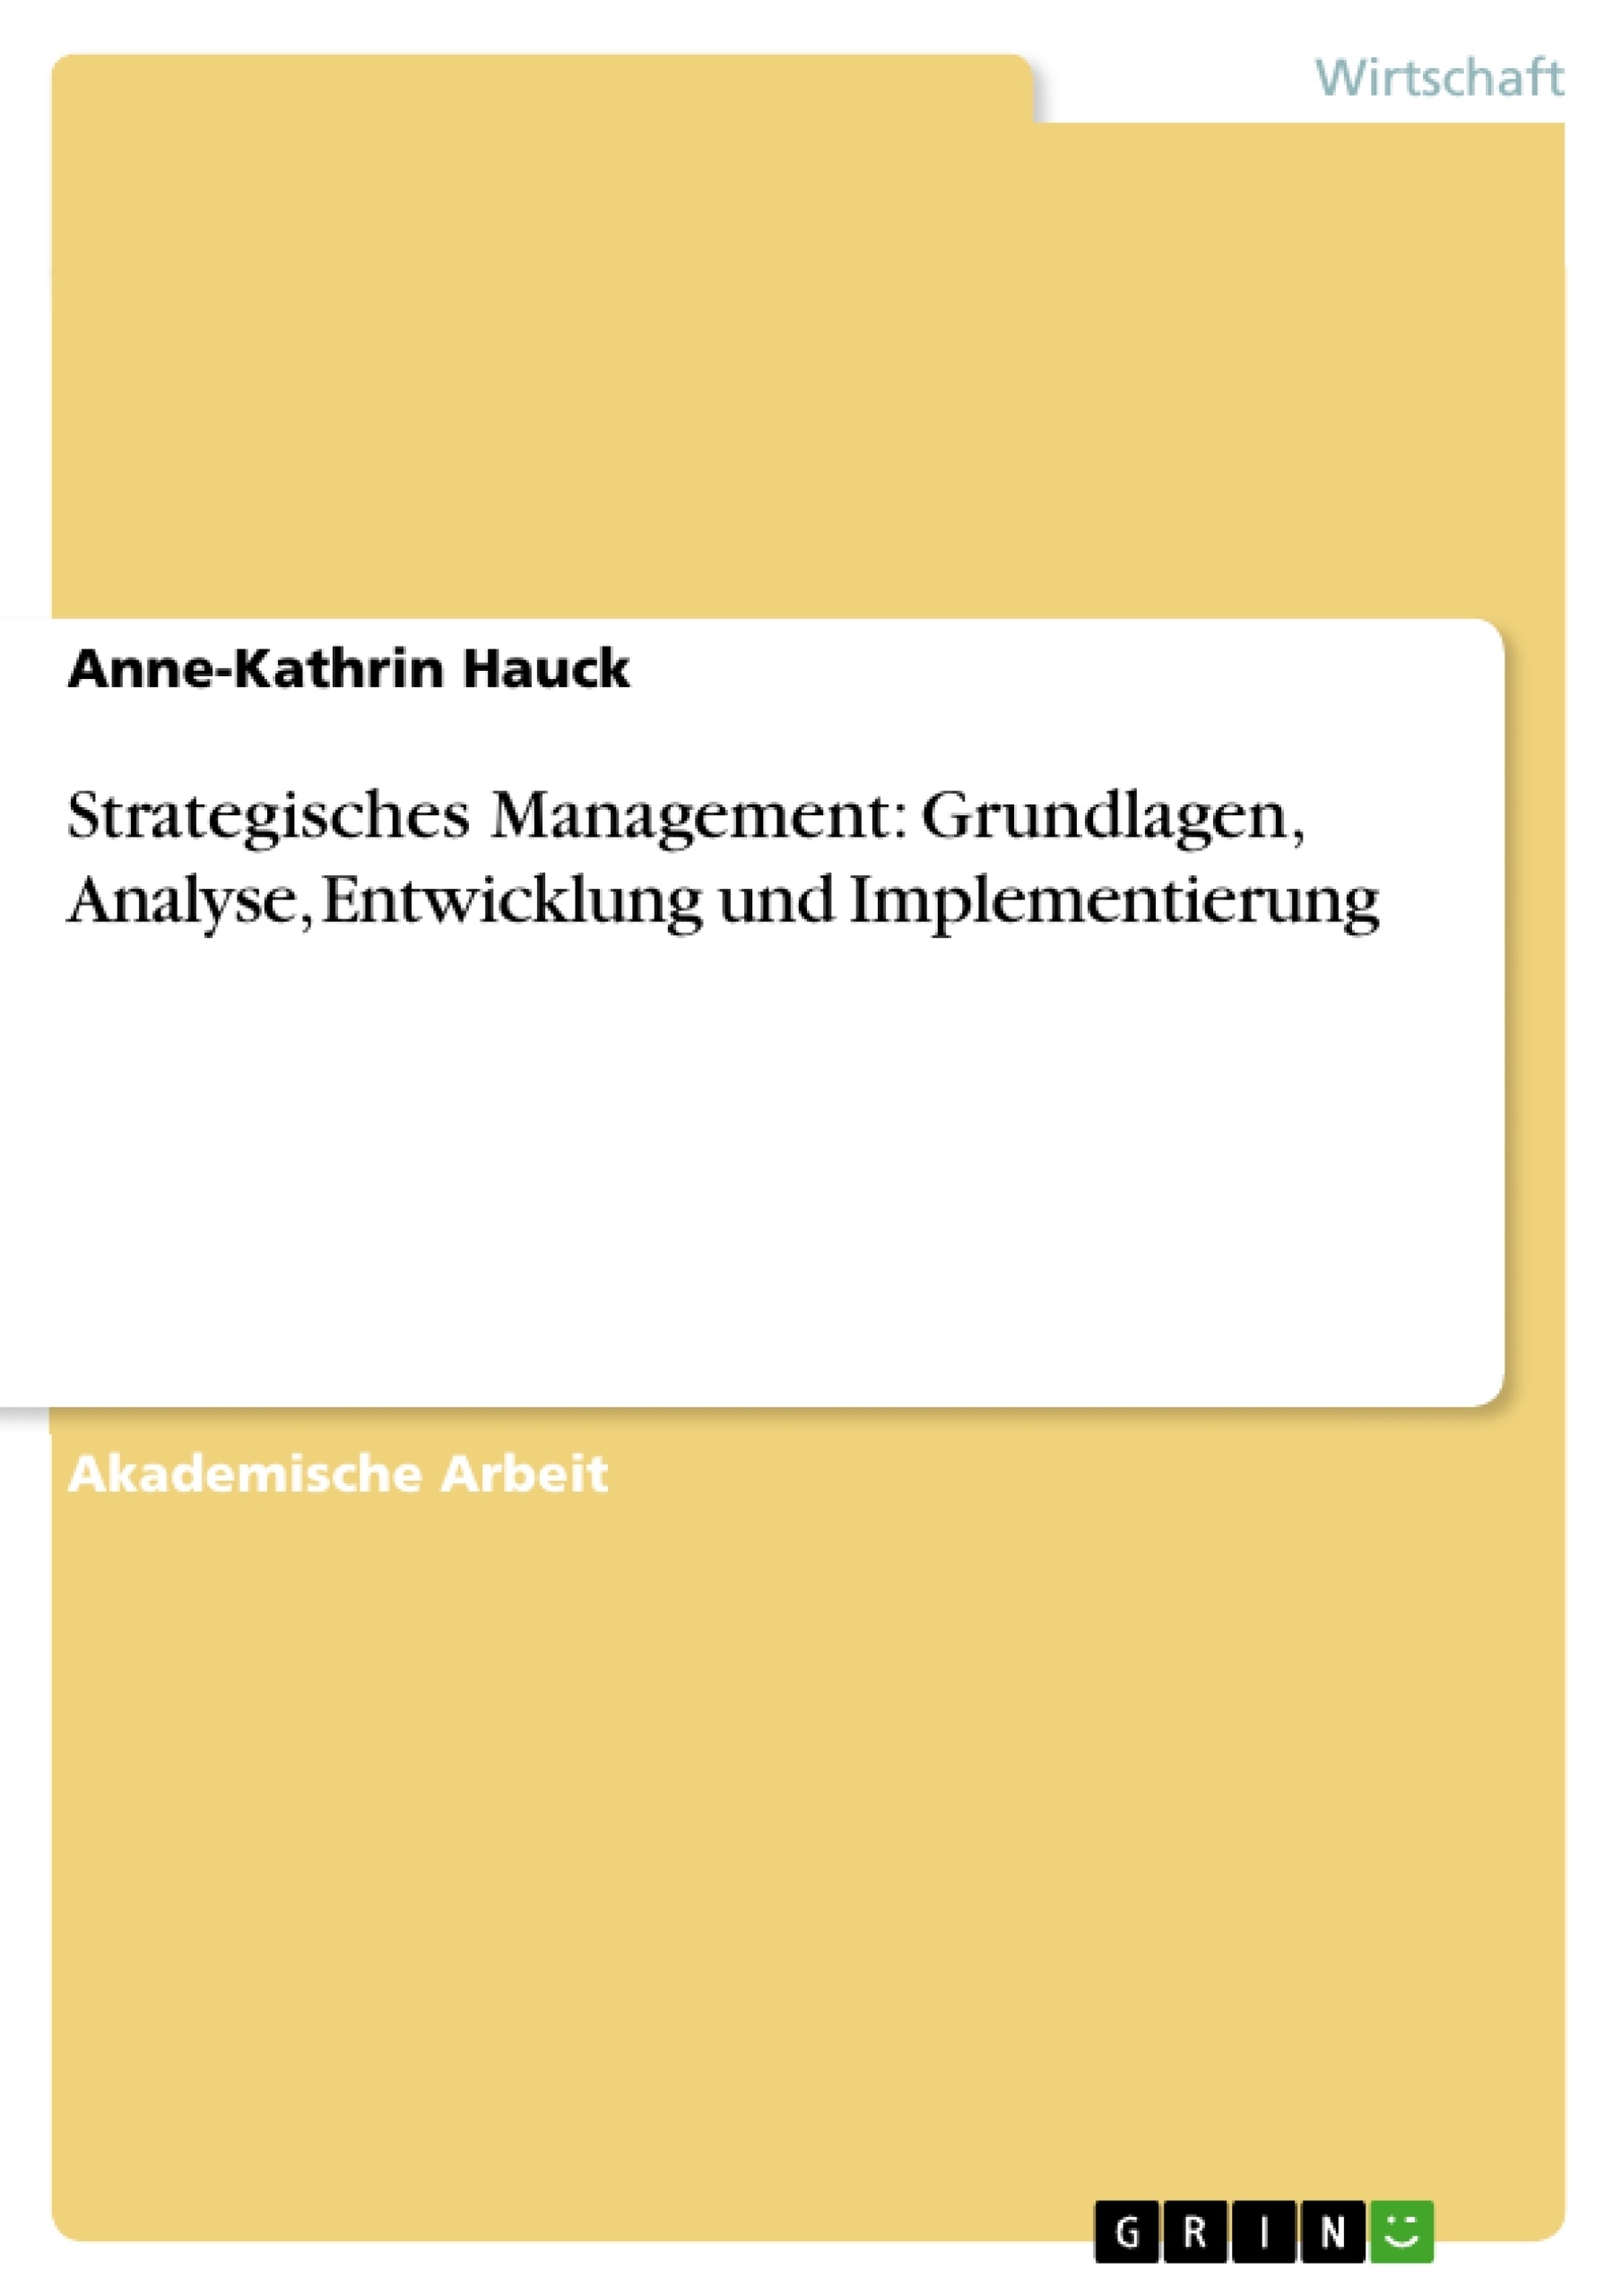 Título: Strategisches Management: Grundlagen, Analyse, Entwicklung und Implementierung